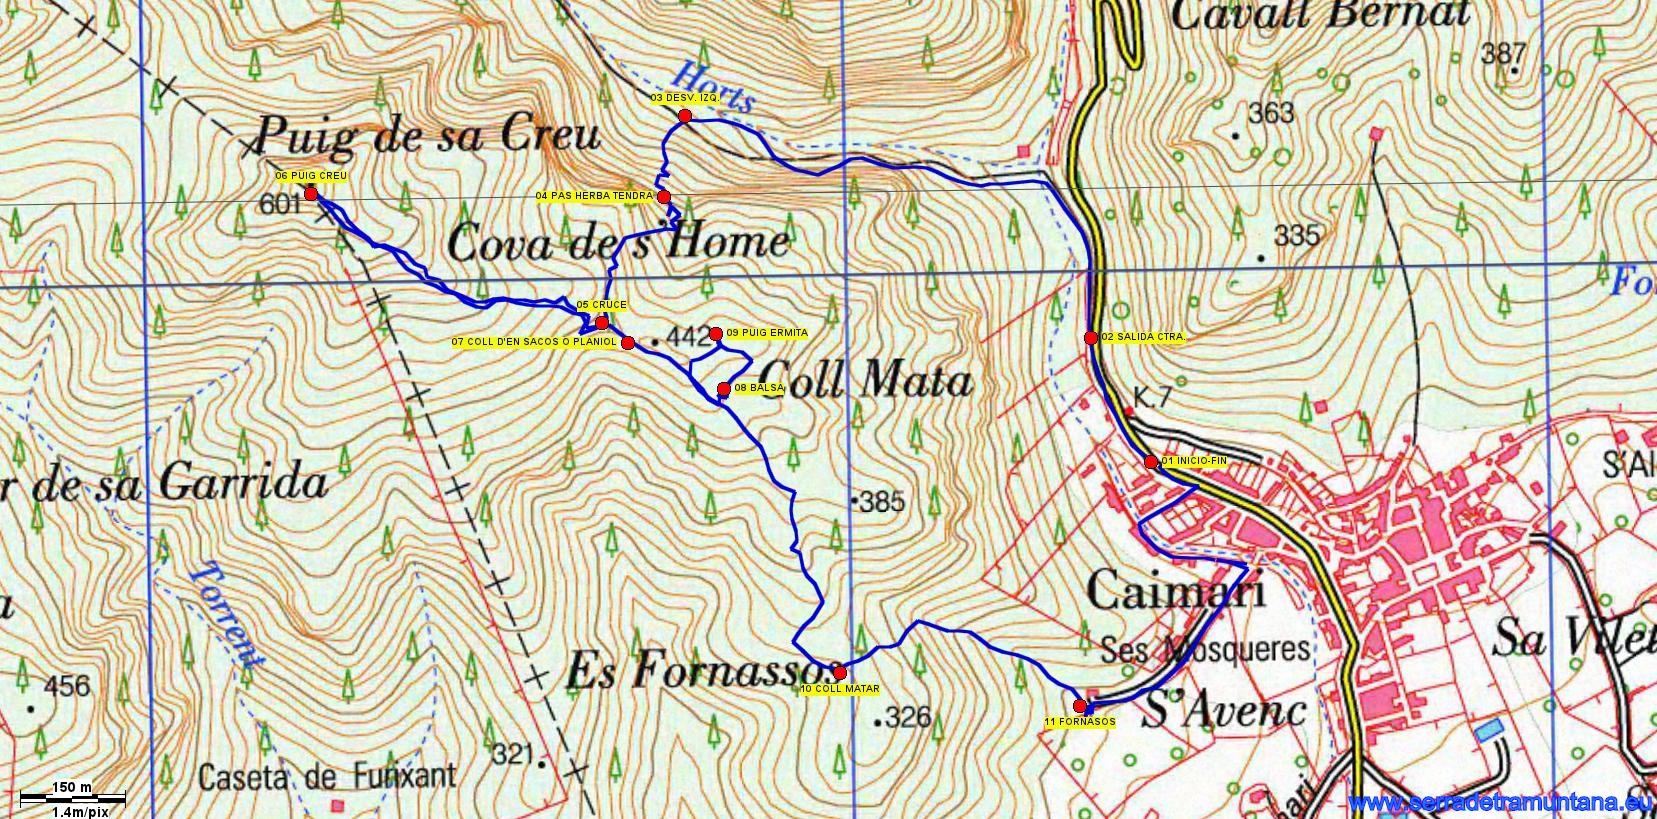 Recorte del mapa del IGN 671 de Inca con la traza de la ruta realizada y los puntos de referencia más importantes